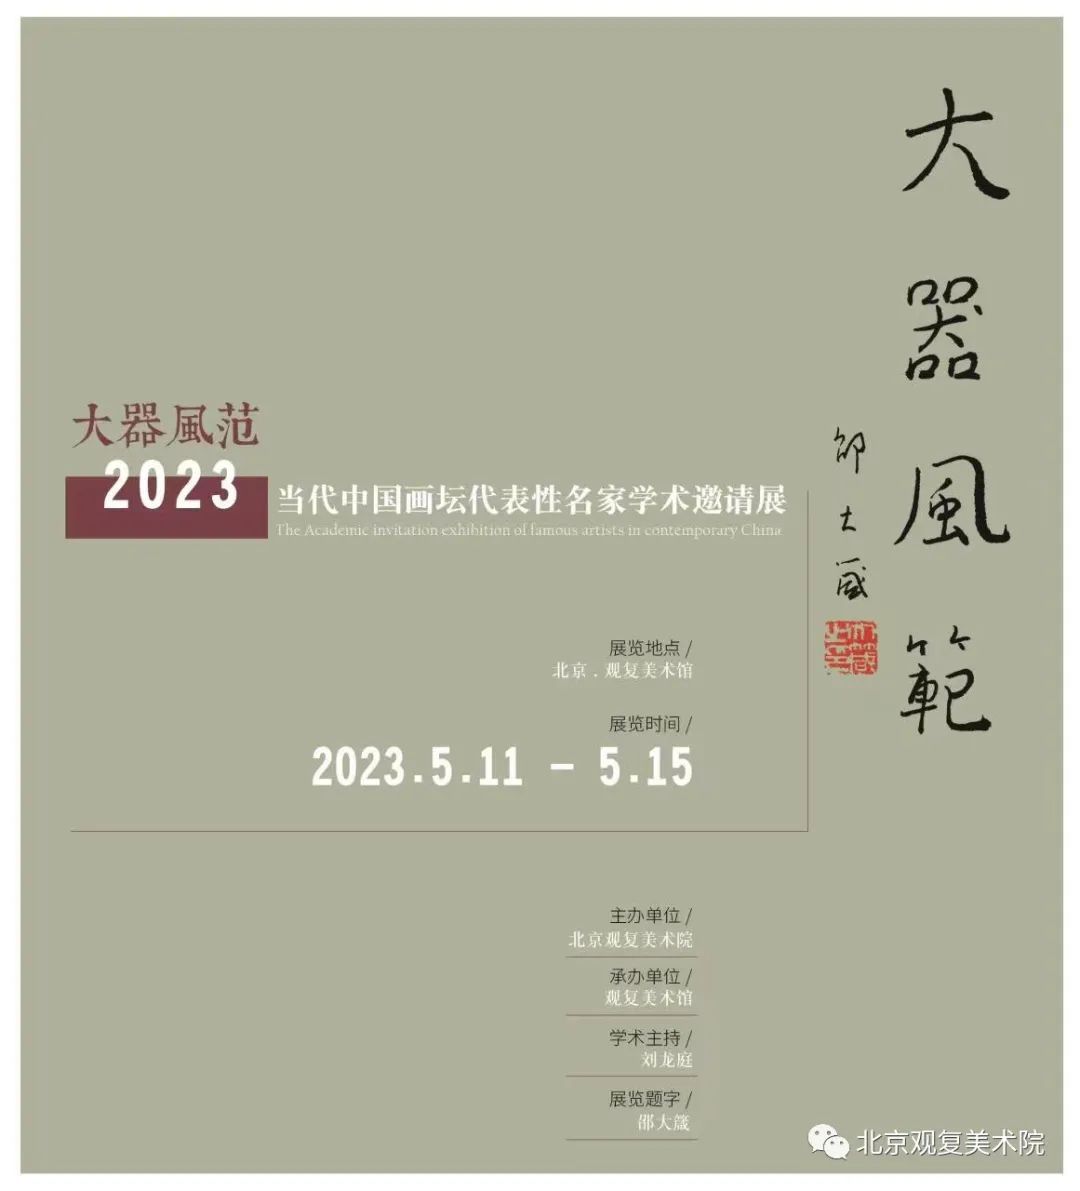 著名画家赵先闻应邀参展“大器风范2023——当代中国画坛代表性名家学术邀请展”